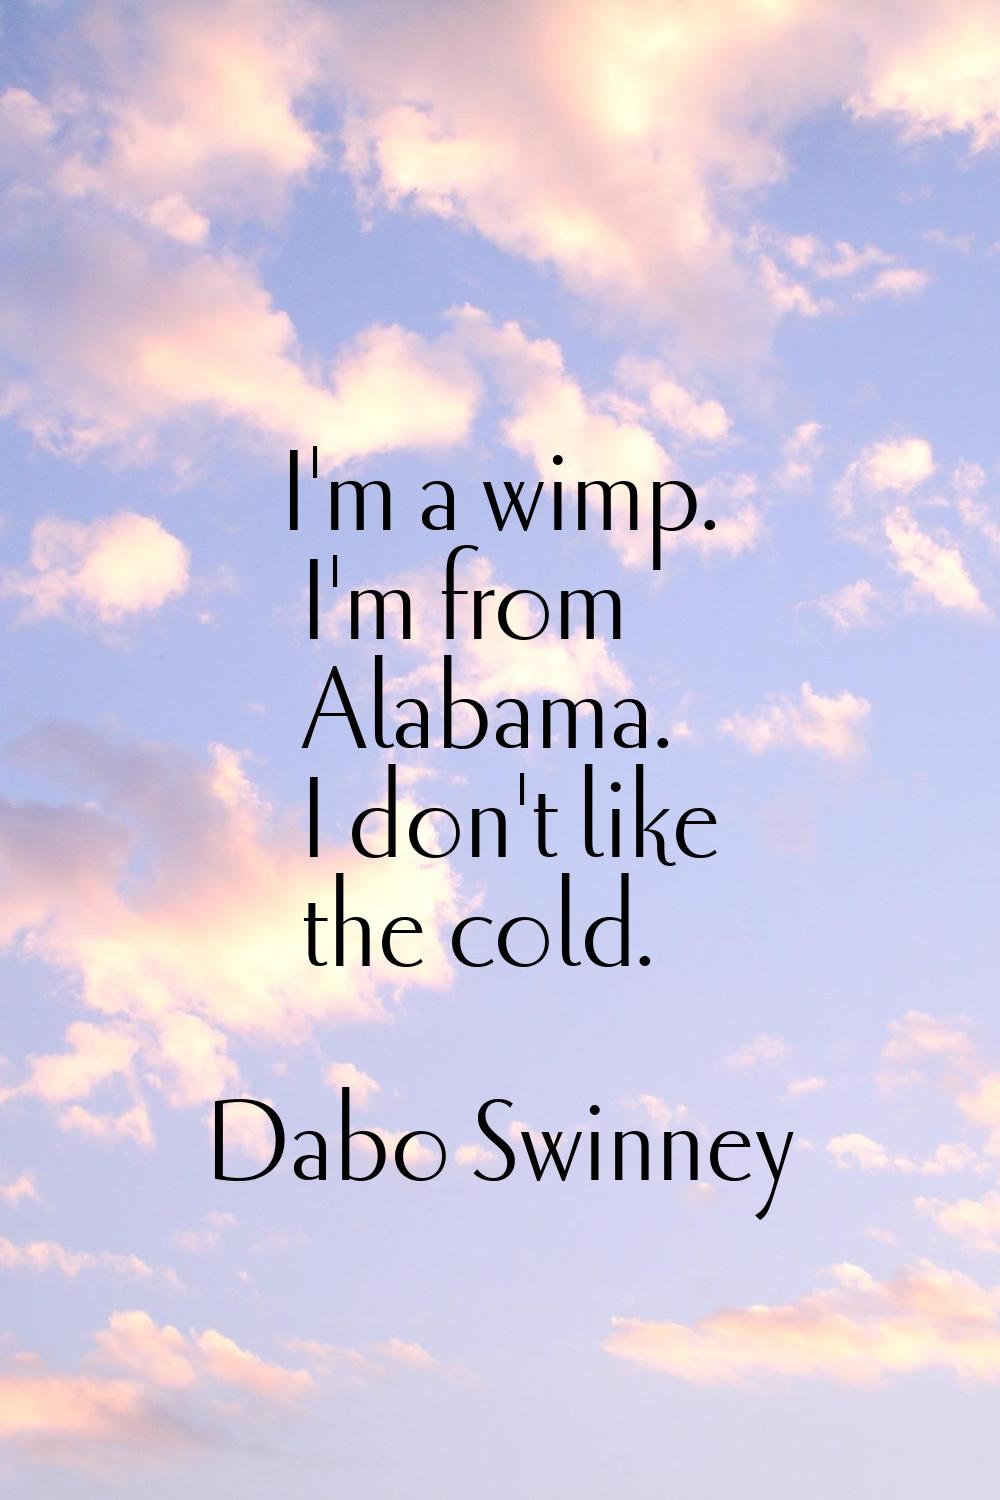 I'm a wimp. I'm from Alabama. I don't like the cold.